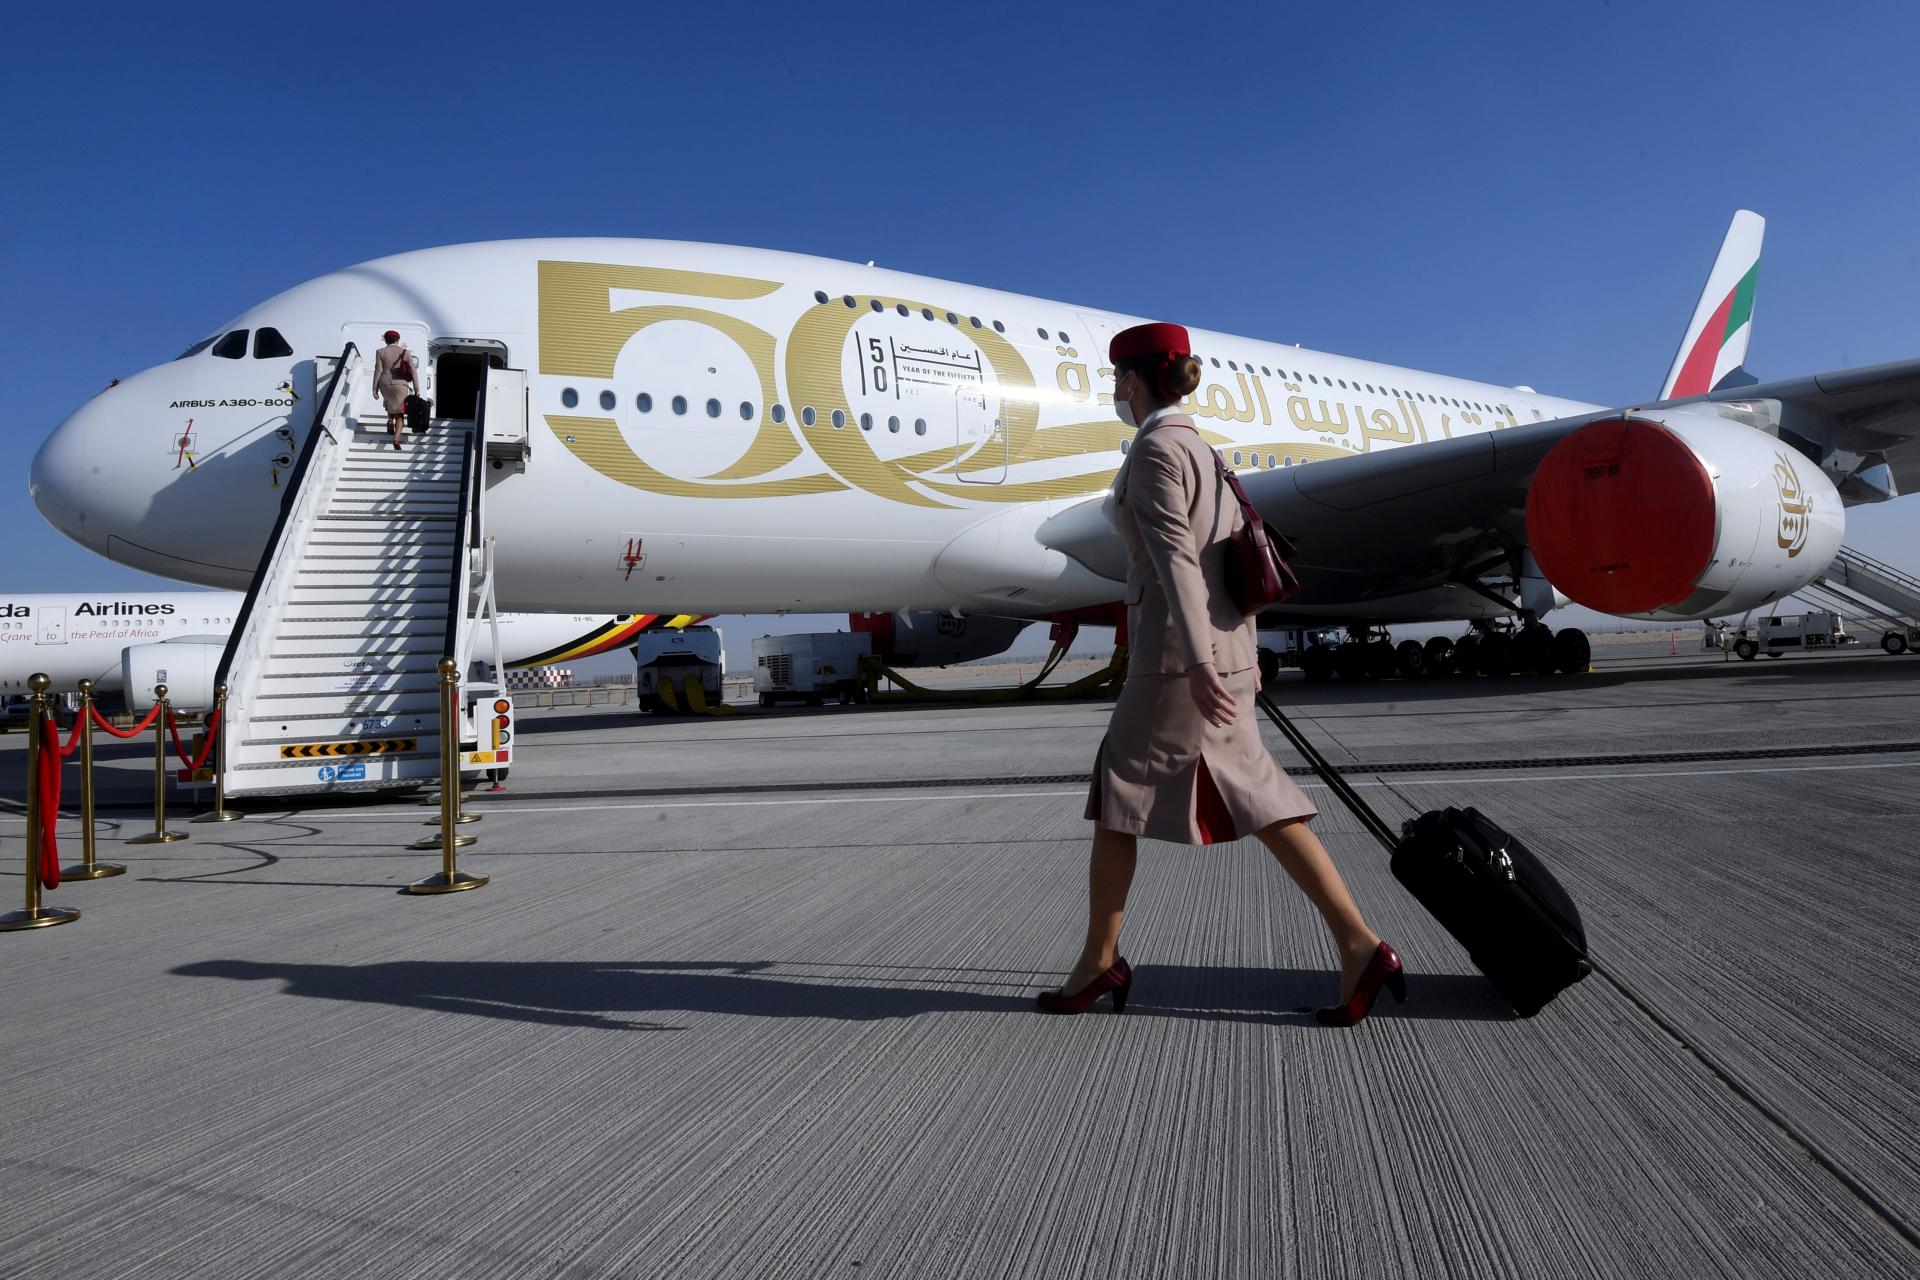 Výborný výsledok dubajského prepravcu. Letecká spoločnosť Emirates vykázala za minulý rok rekordný zisk